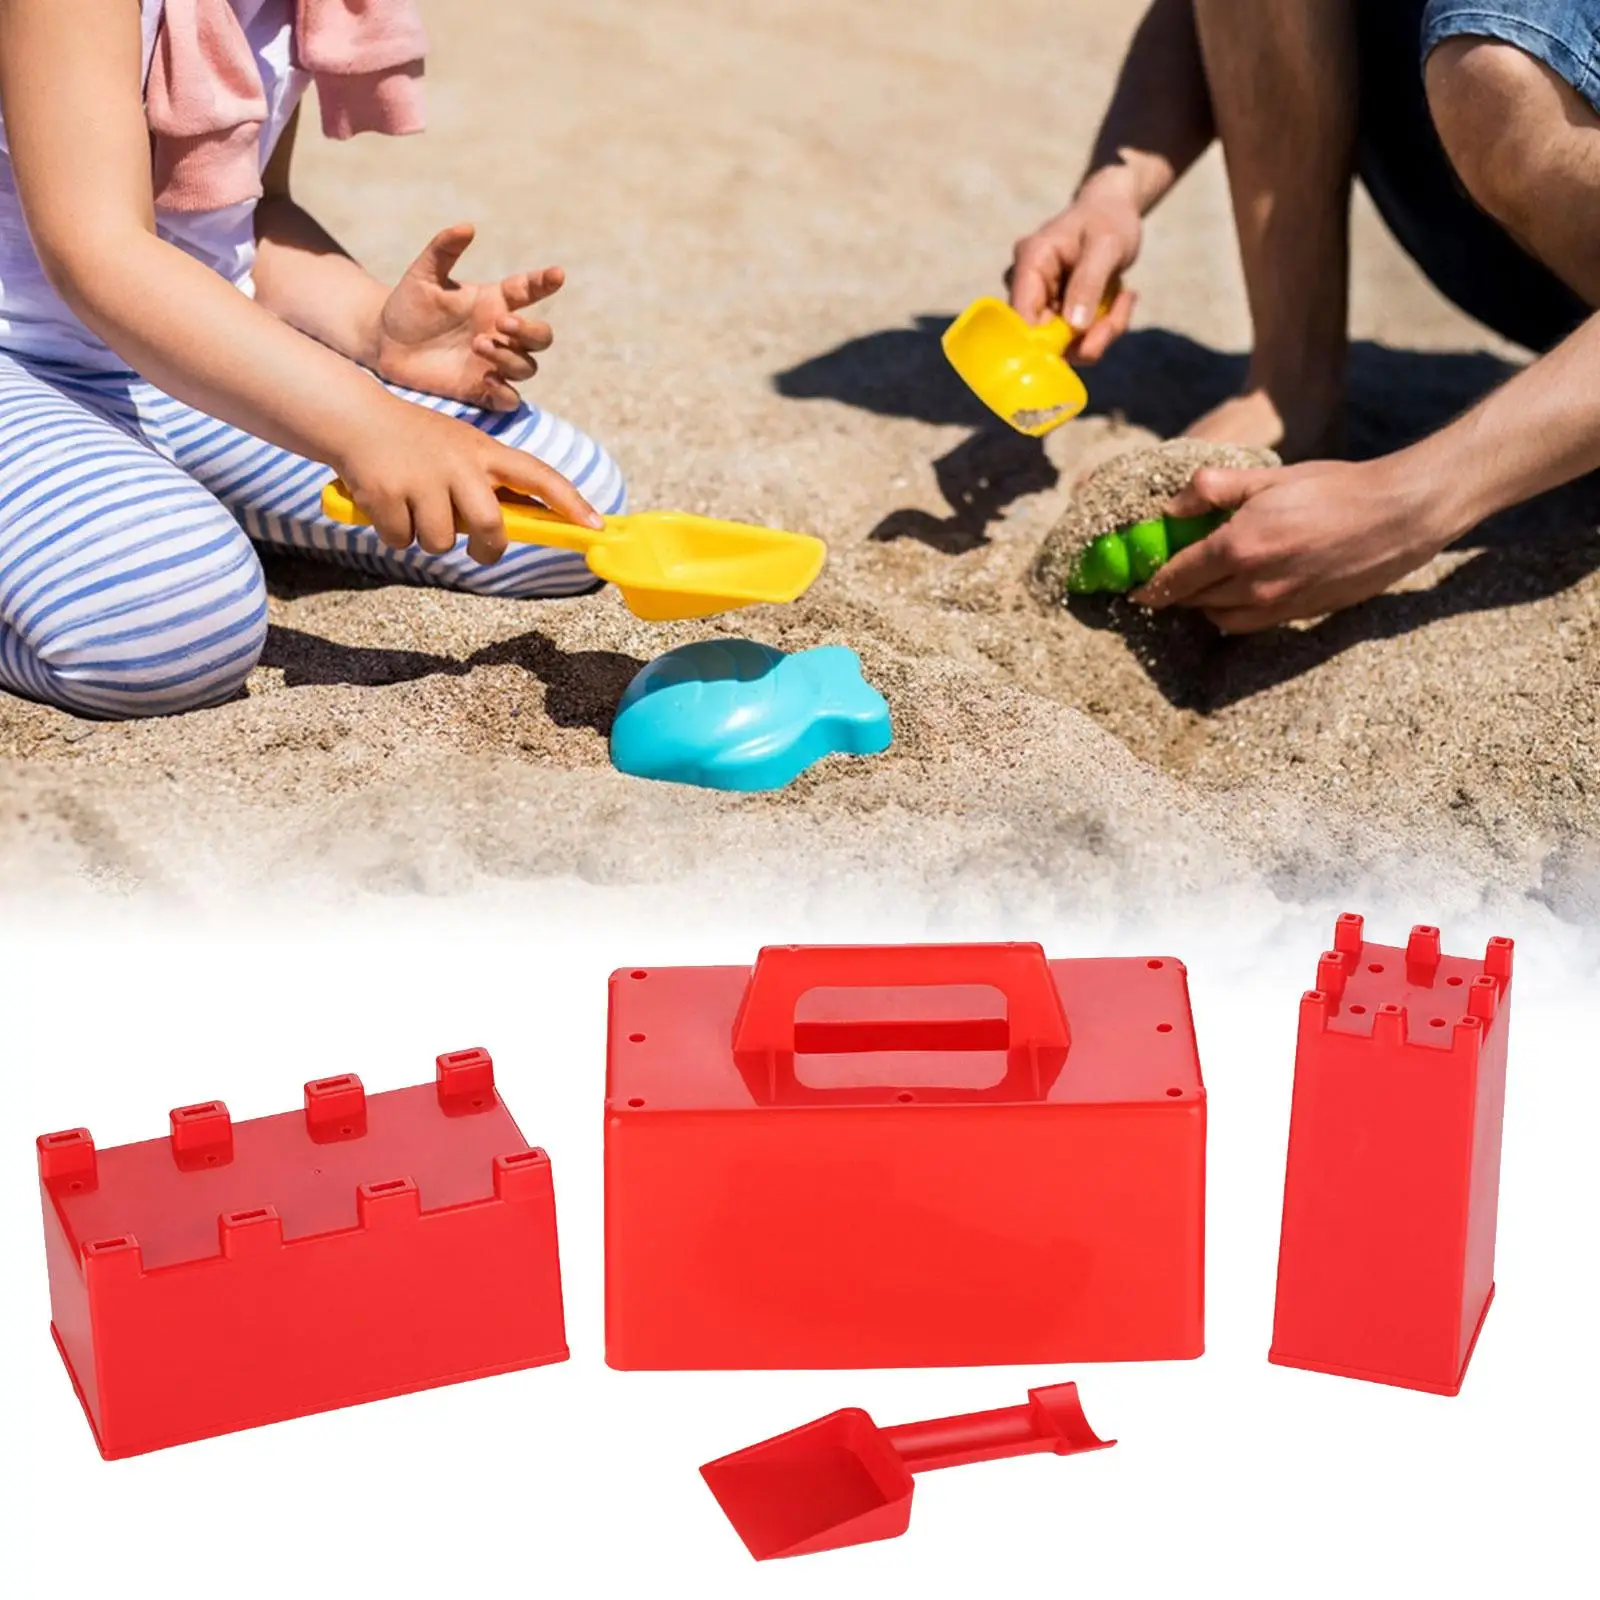 4Pcs/Set Portable Sand Castle Models, Kids Beach Sand Toys, Snow Brick Building Maker, Outdoors Beach Sandcastle Building Kit